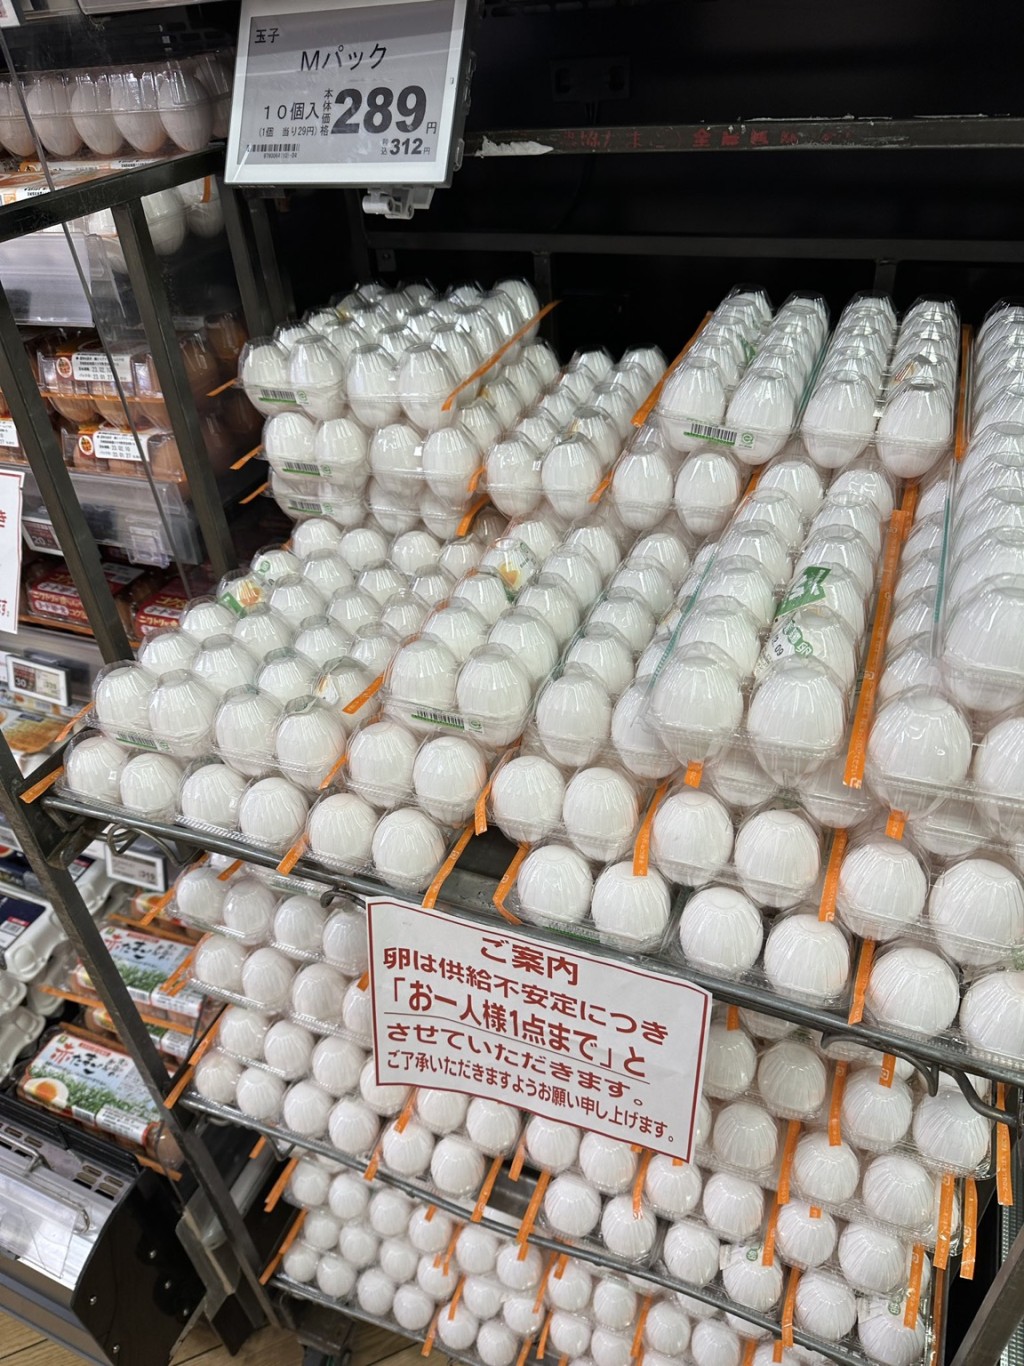 有商店限每人購買一排雞蛋。 網上圖片